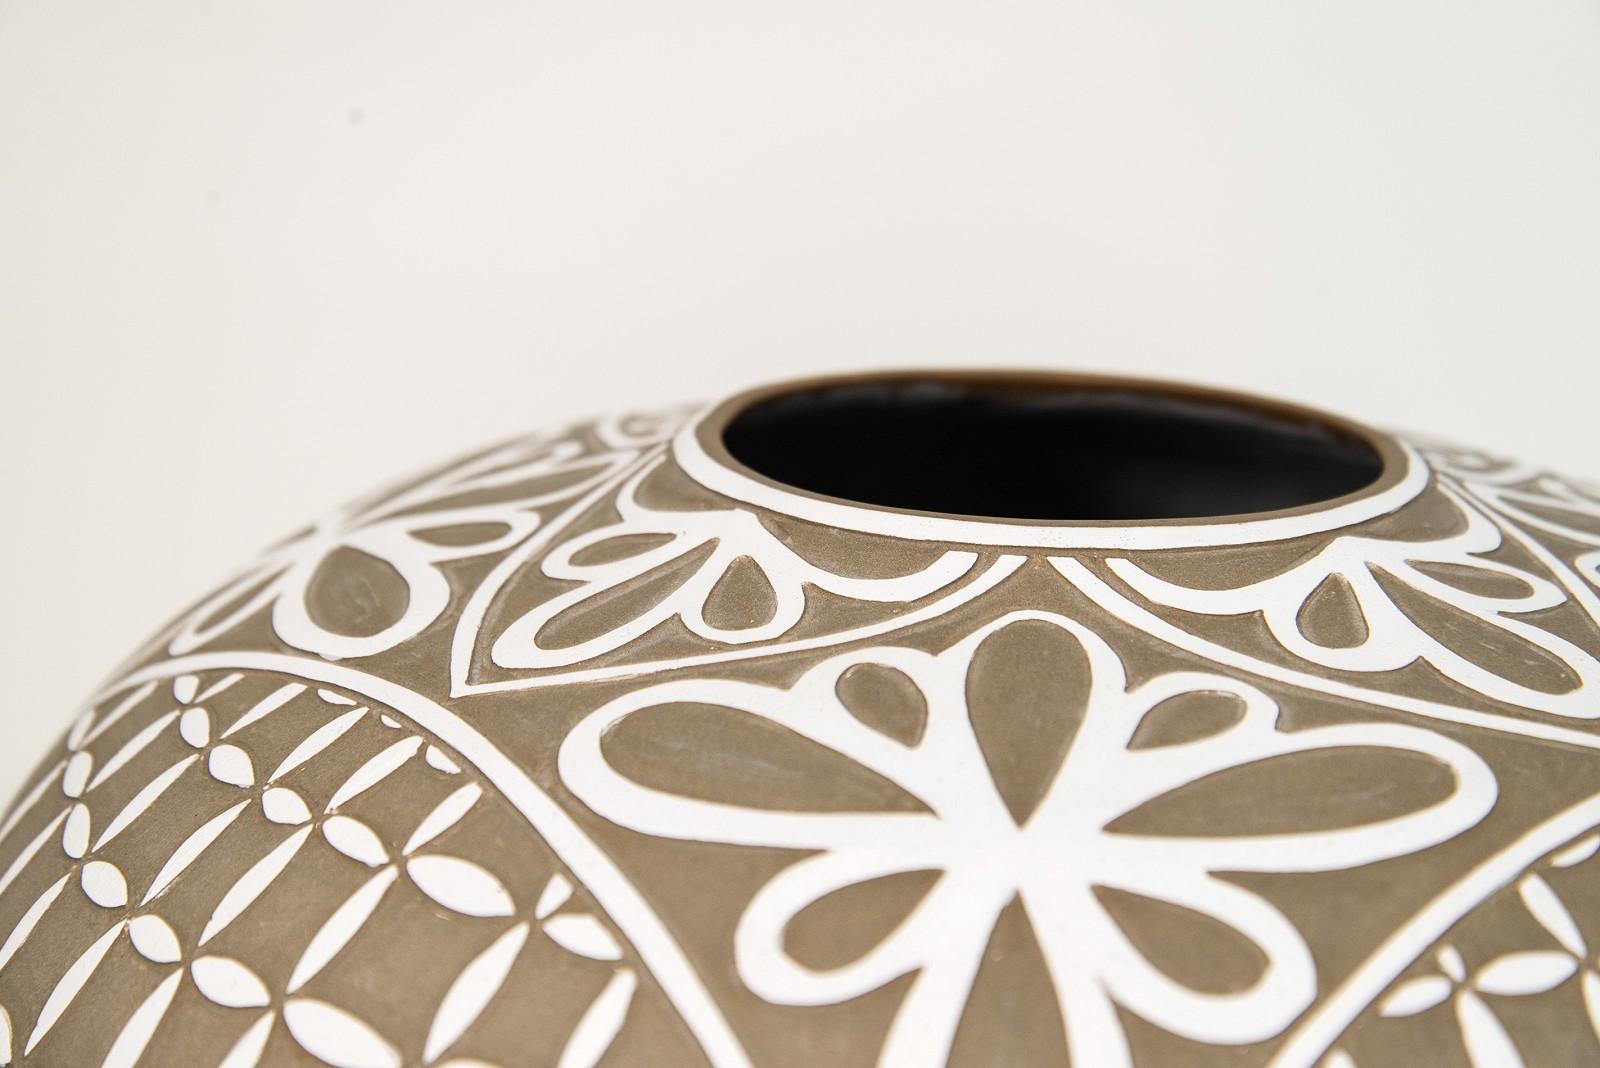 Dieses elegante Gefäß der Keramikerin Loren Kaplan ist mit zarten Blumenblättern verziert. Seine klassische Form wird durch die neutrale taupefarbene Farbe und das kontrastreiche, strahlende Weiß der handgravierten Blütenblätter noch verstärkt.